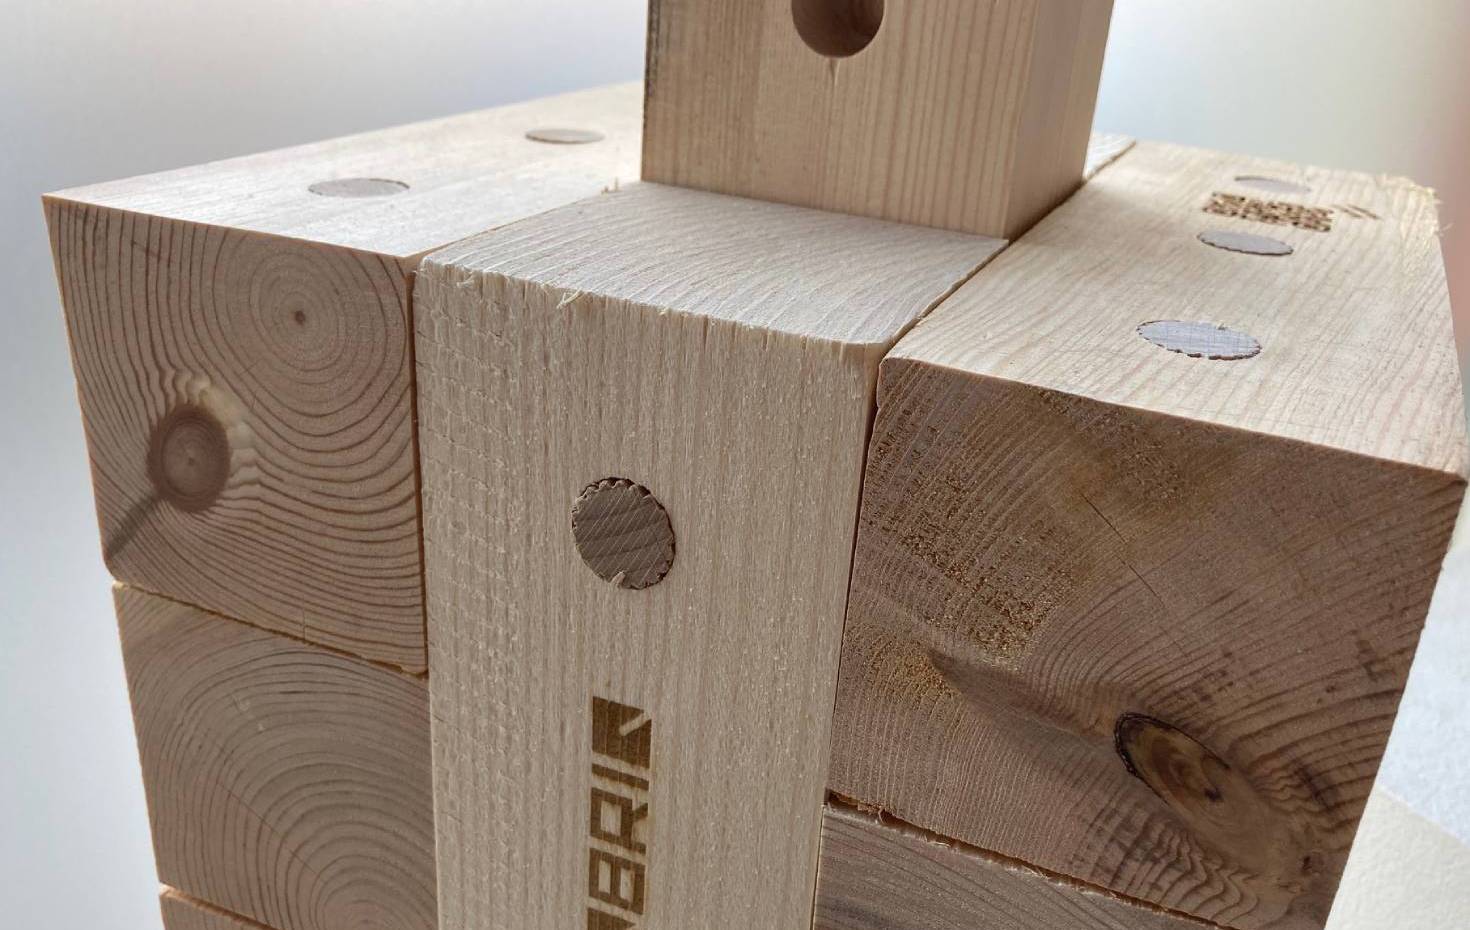 TriqBriq Holzbaustein - Leim- und metallfreies Bauen mit Holz